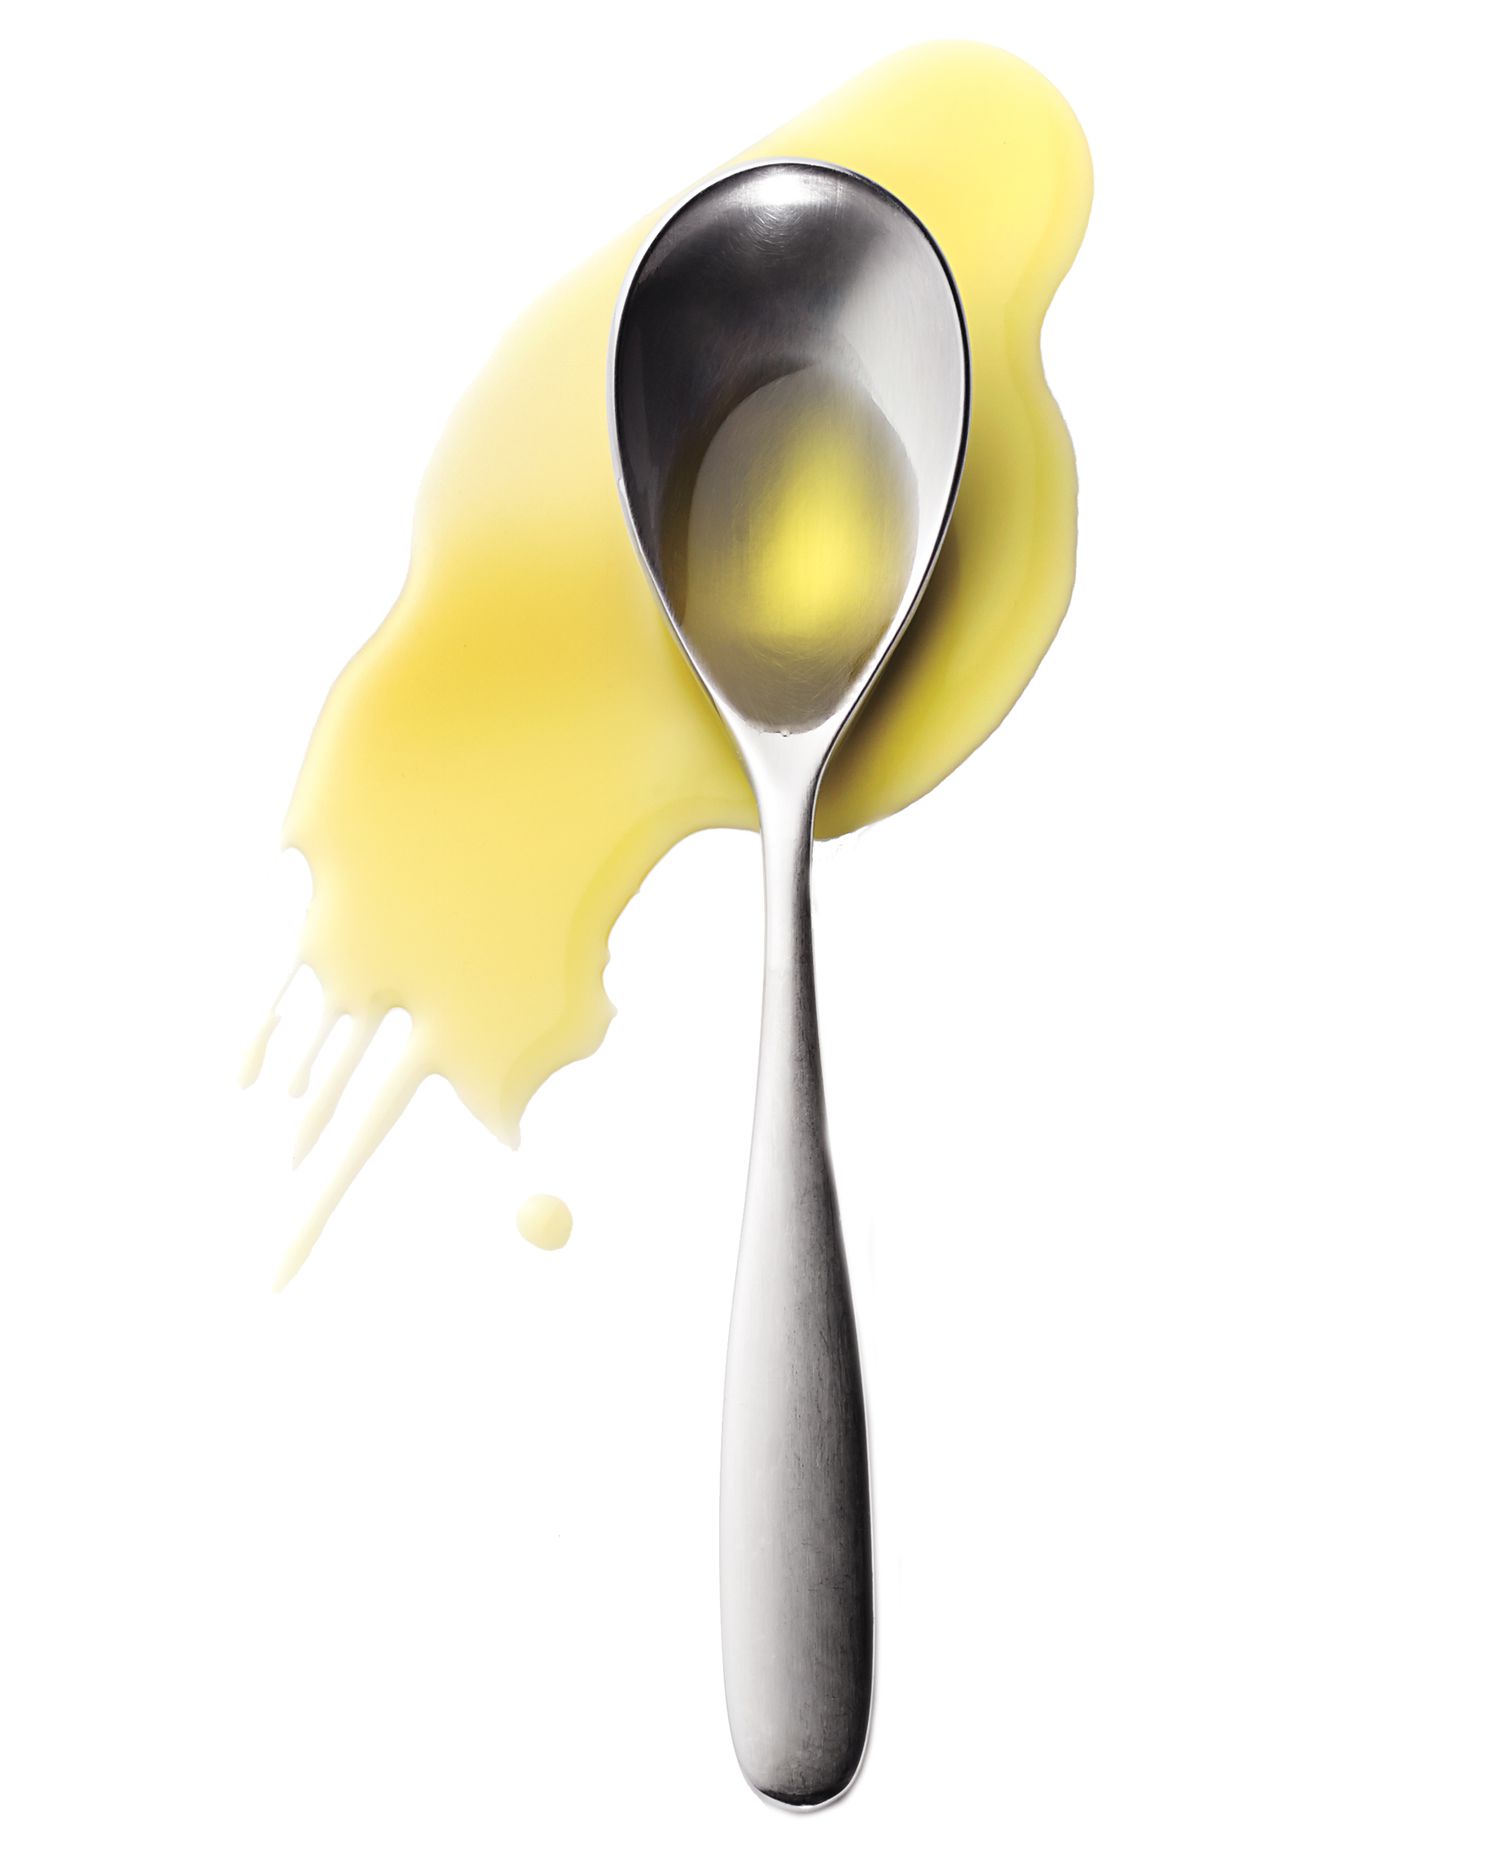 msl-healthy-living-oils-spoon-md110010.jpg